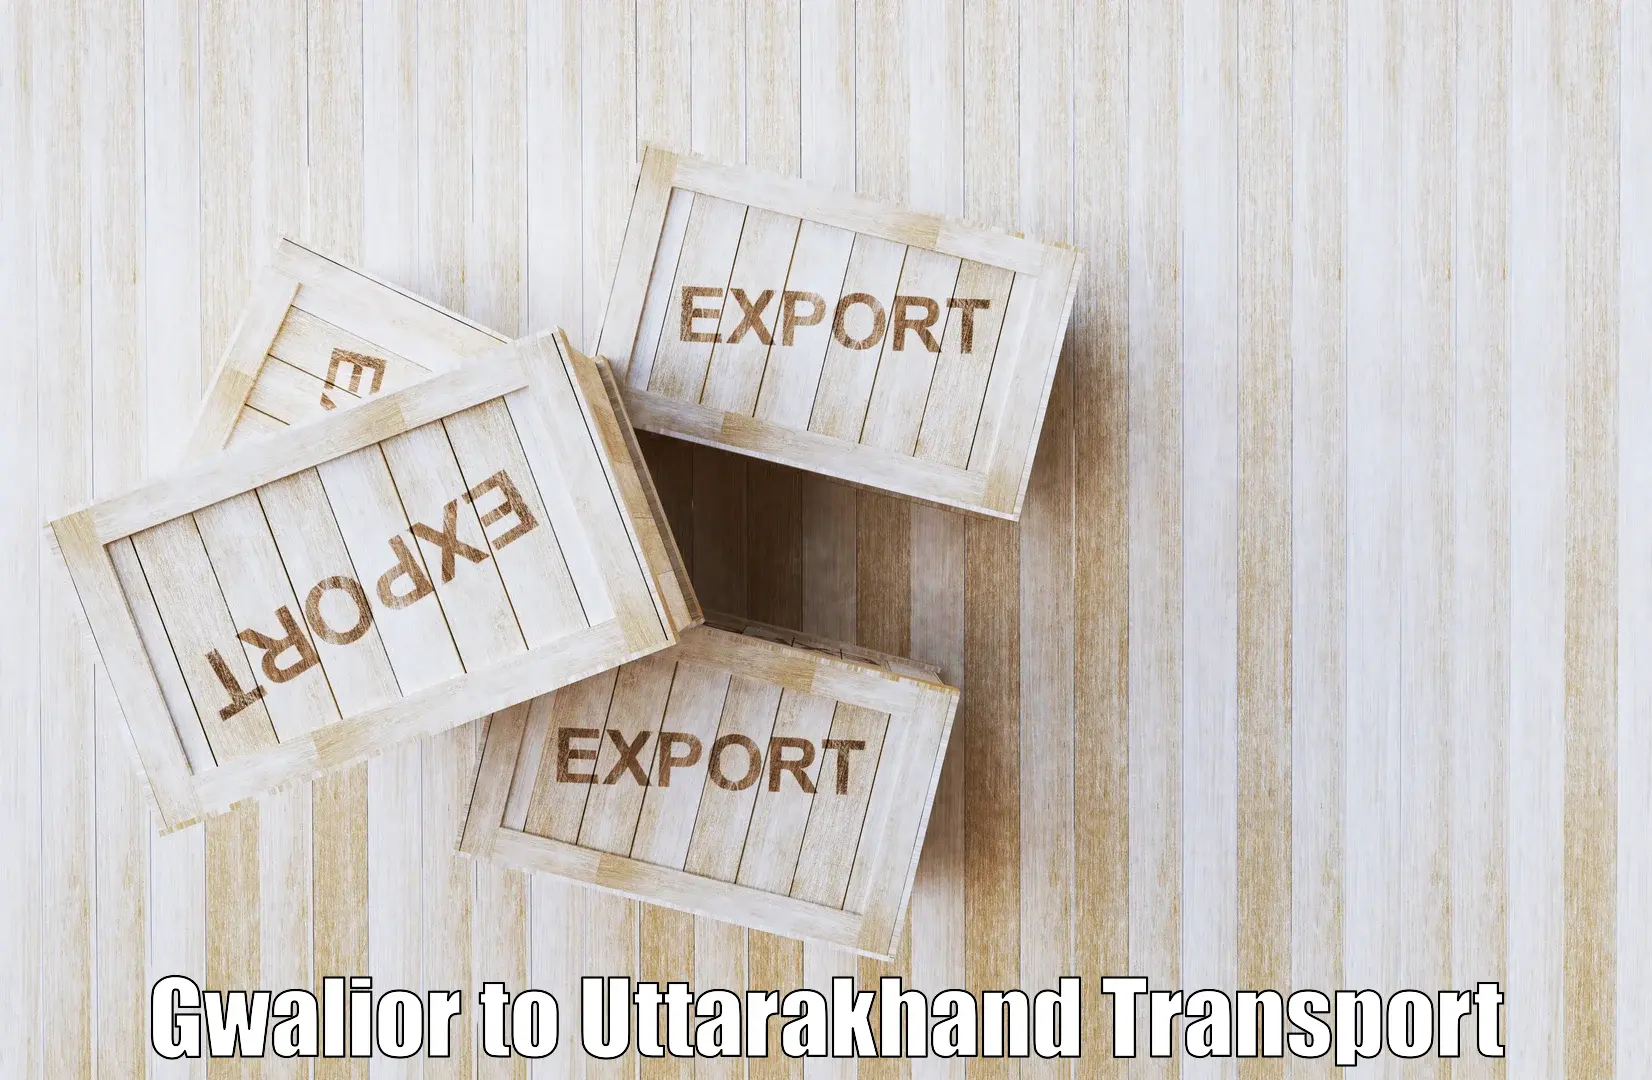 Interstate transport services Gwalior to Uttarkashi